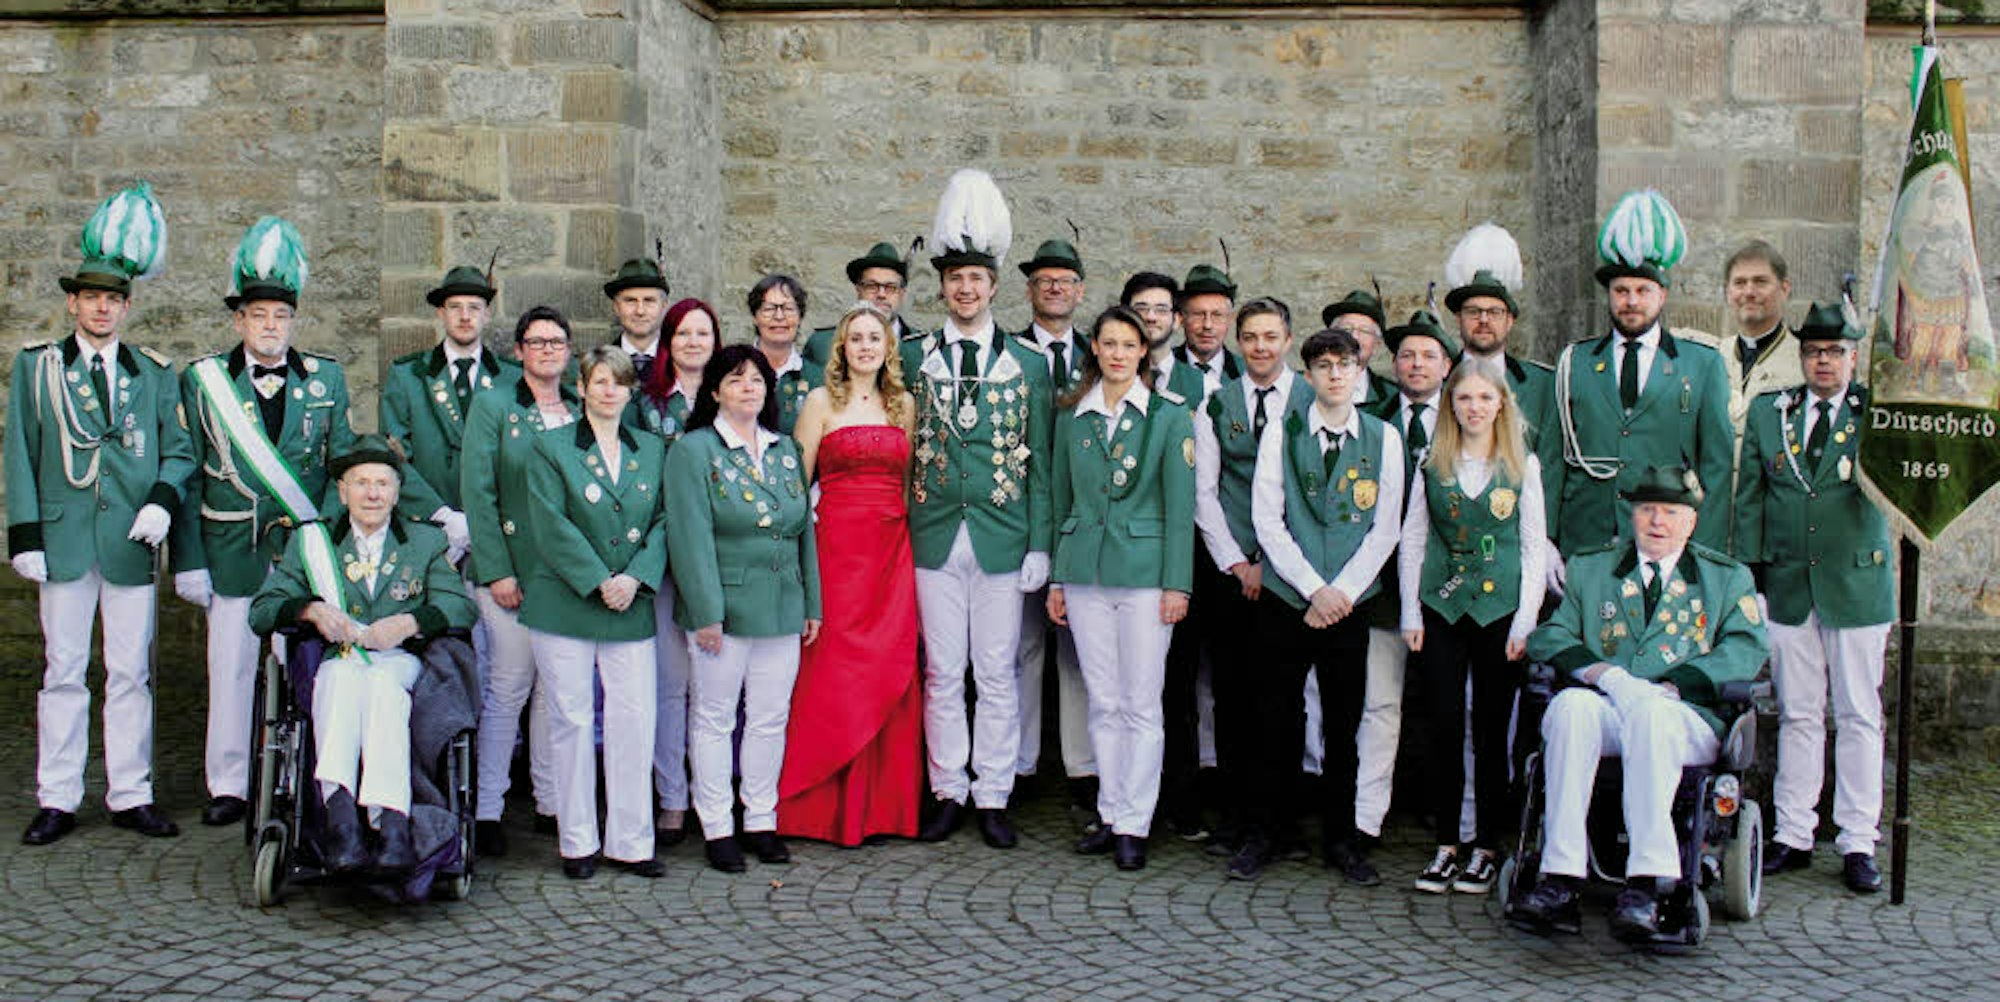 Die Mitglieder der St. Sebastianus Schützenbruderschaft Dürscheid im Festjahr 2019.